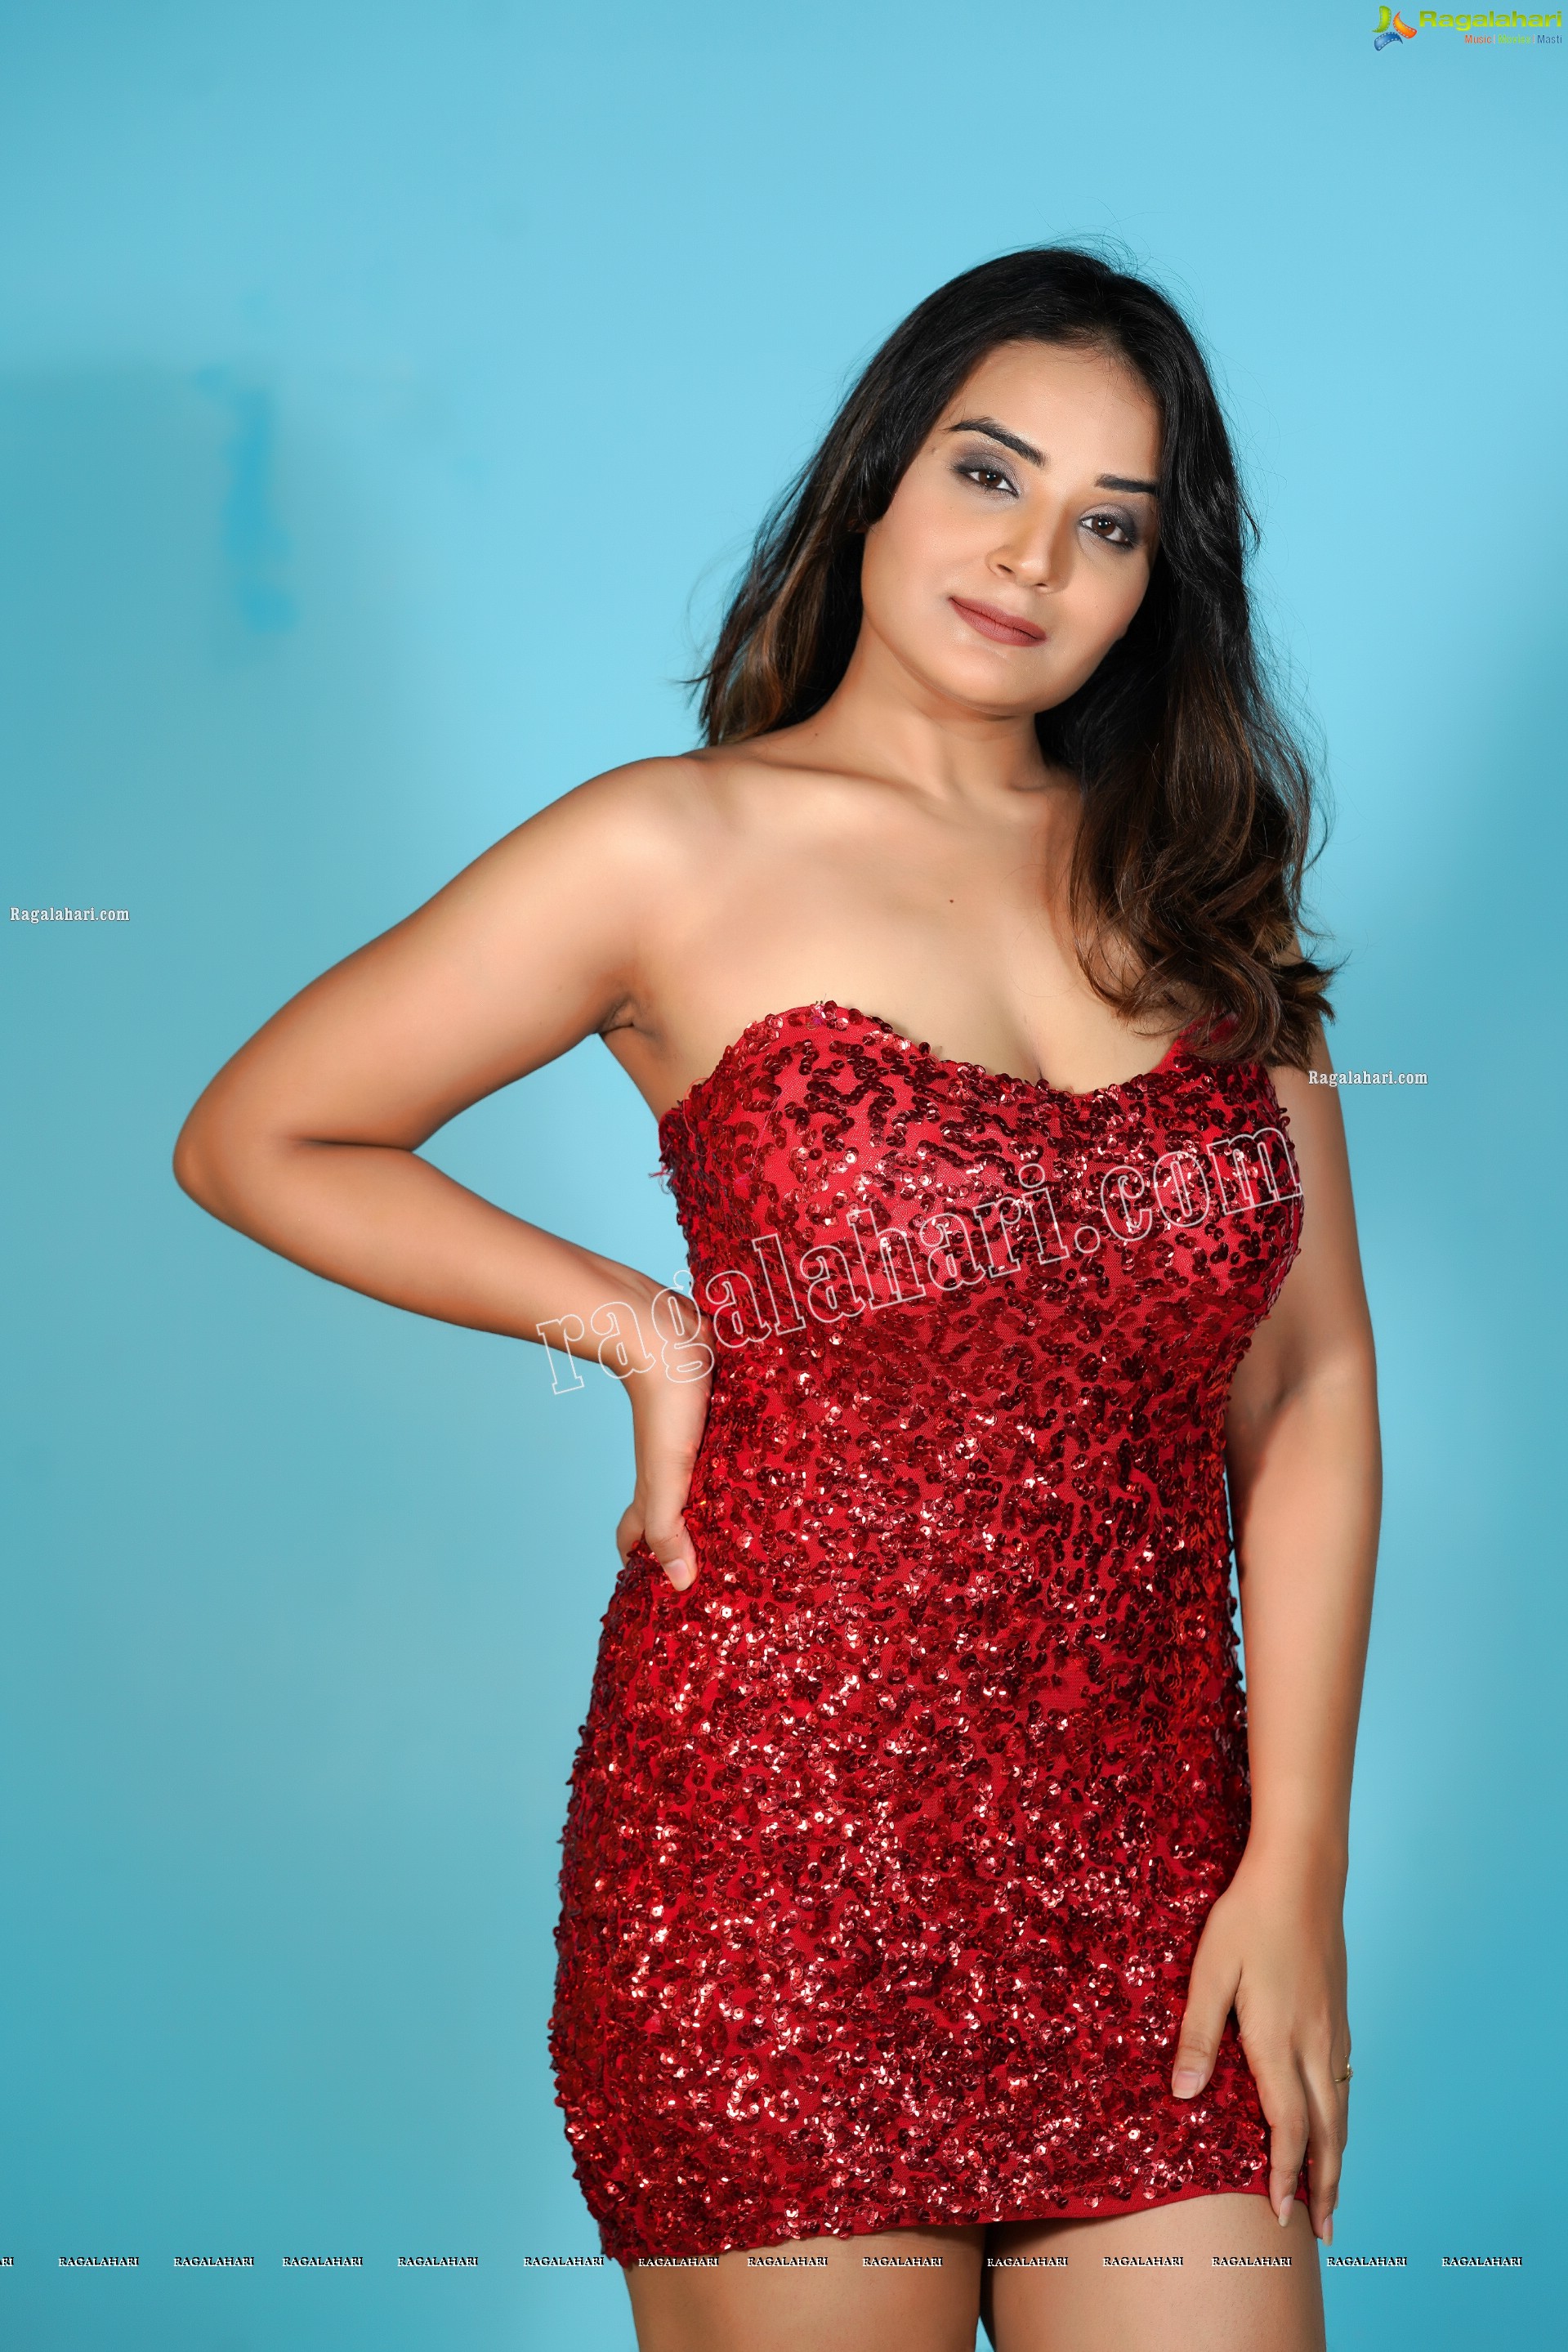 Aadita in Red Sequin Bodycon Dress, Exclusive Photo Shoot